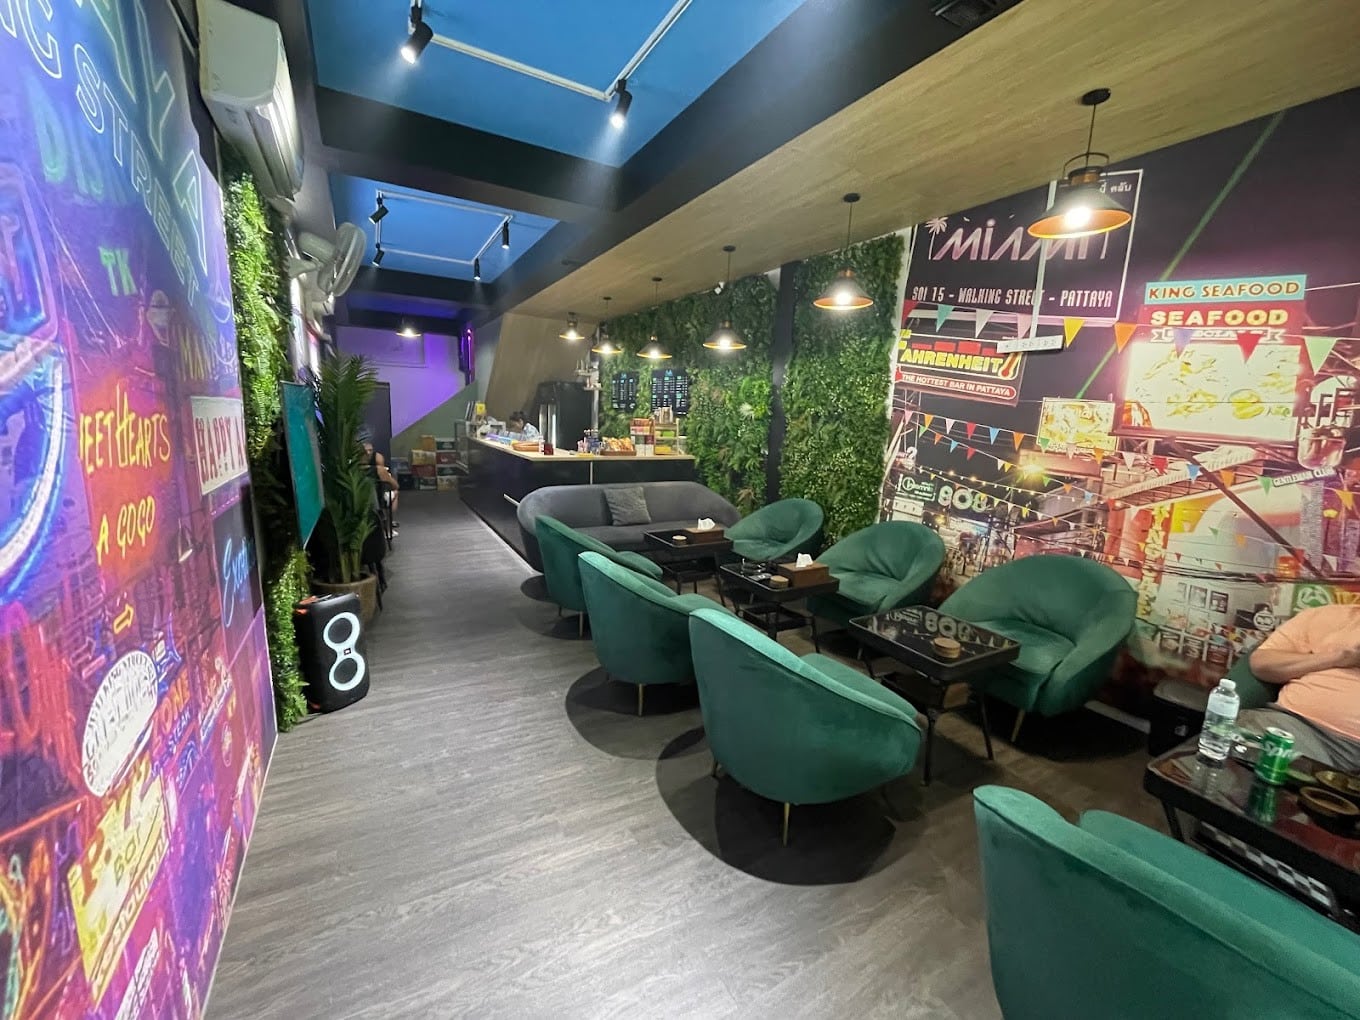 Exotics 420 Pattaya- Cannabis Cafe and Bar